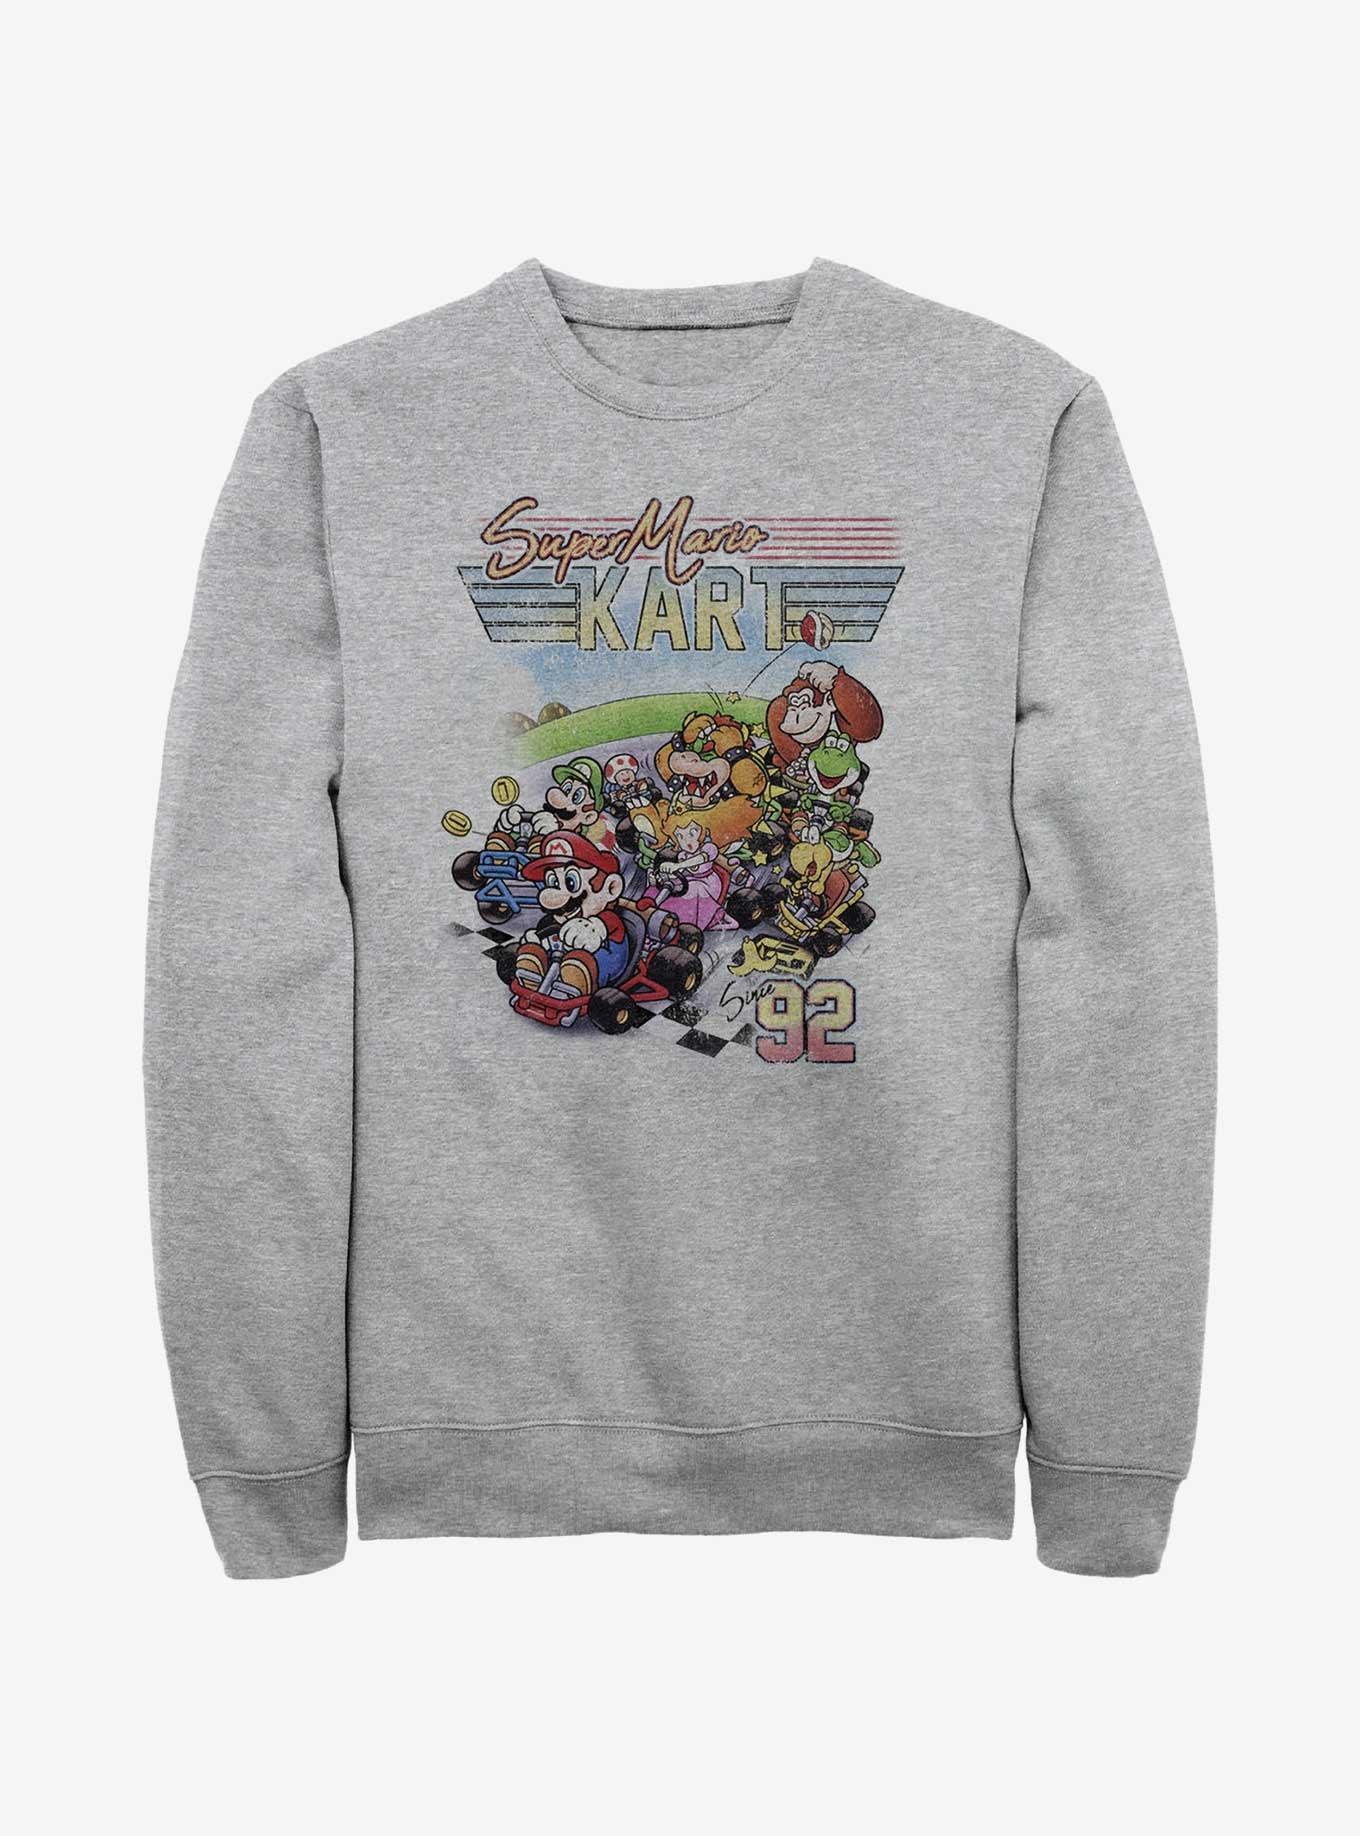 Nintendo Mario Kart Nineties Sweatshirt